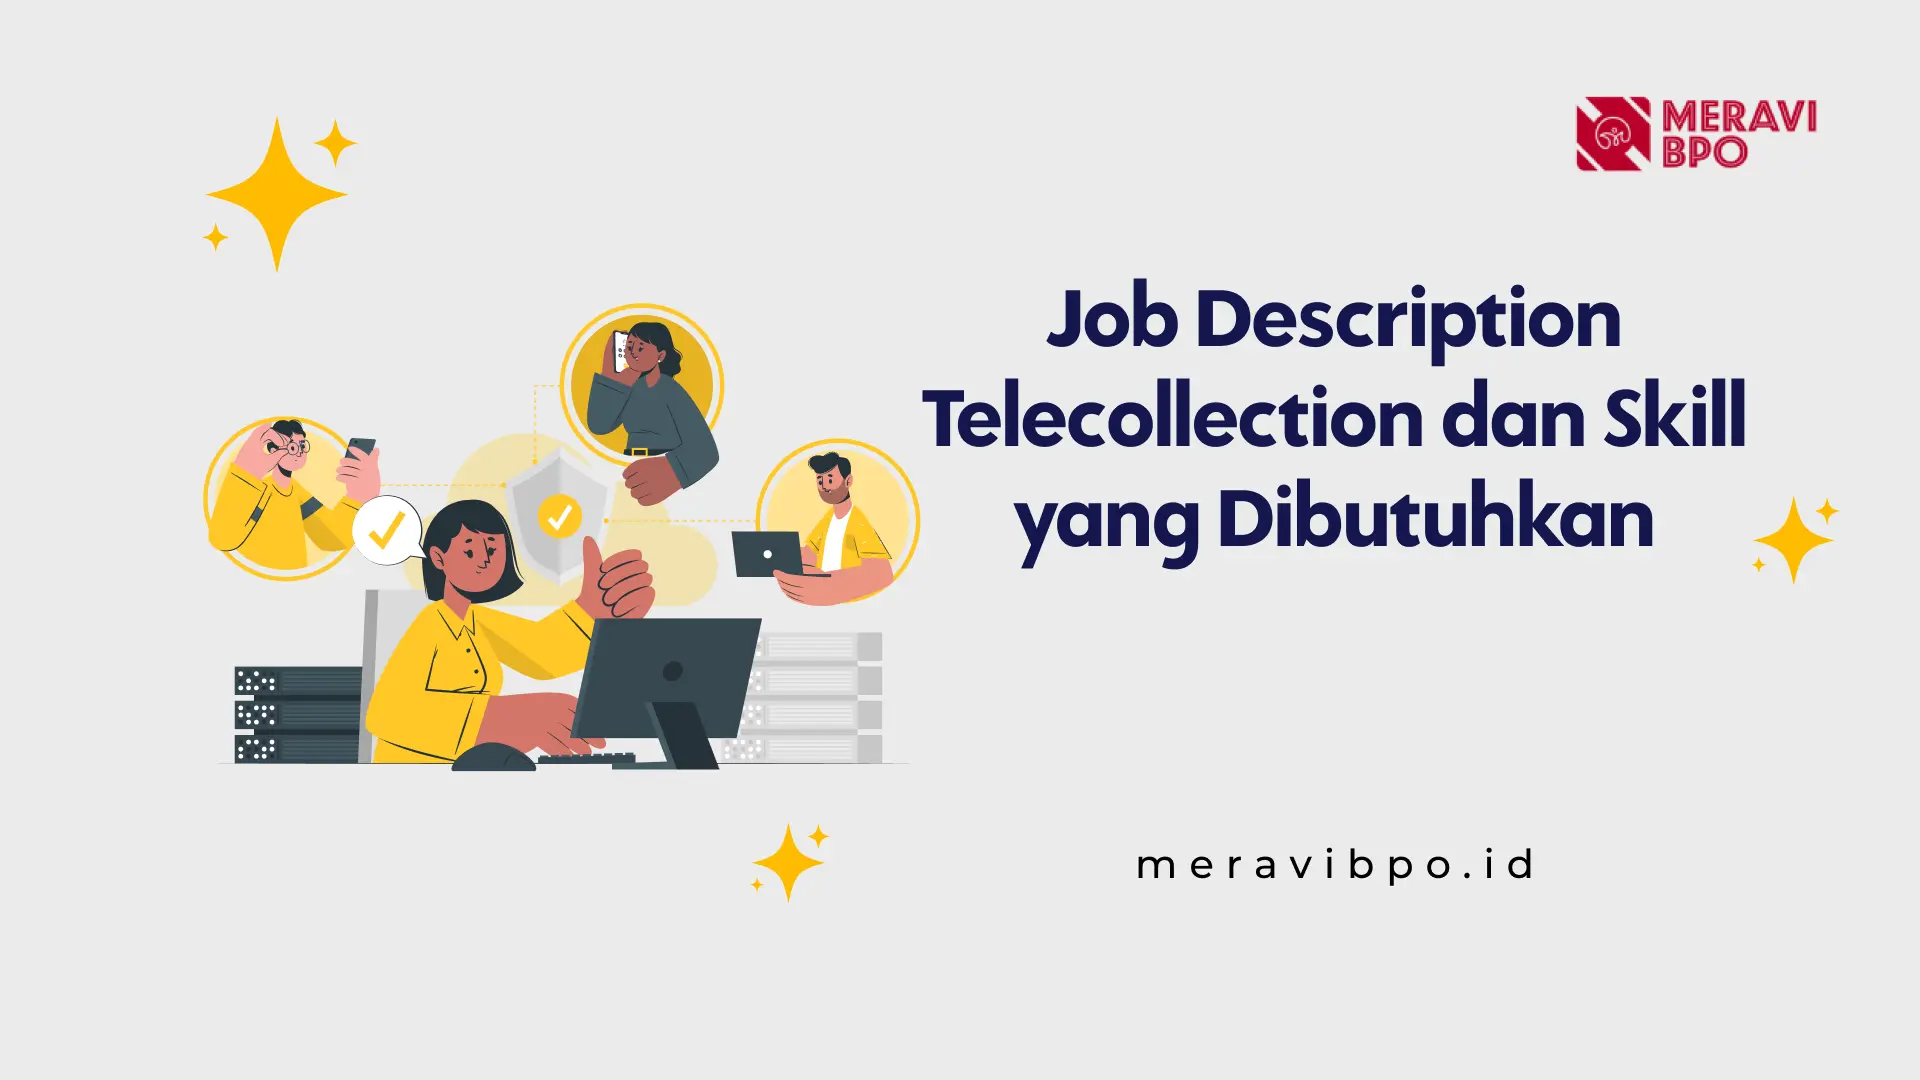 Job Description Telecollection dan Skill yang Dibutuhkan